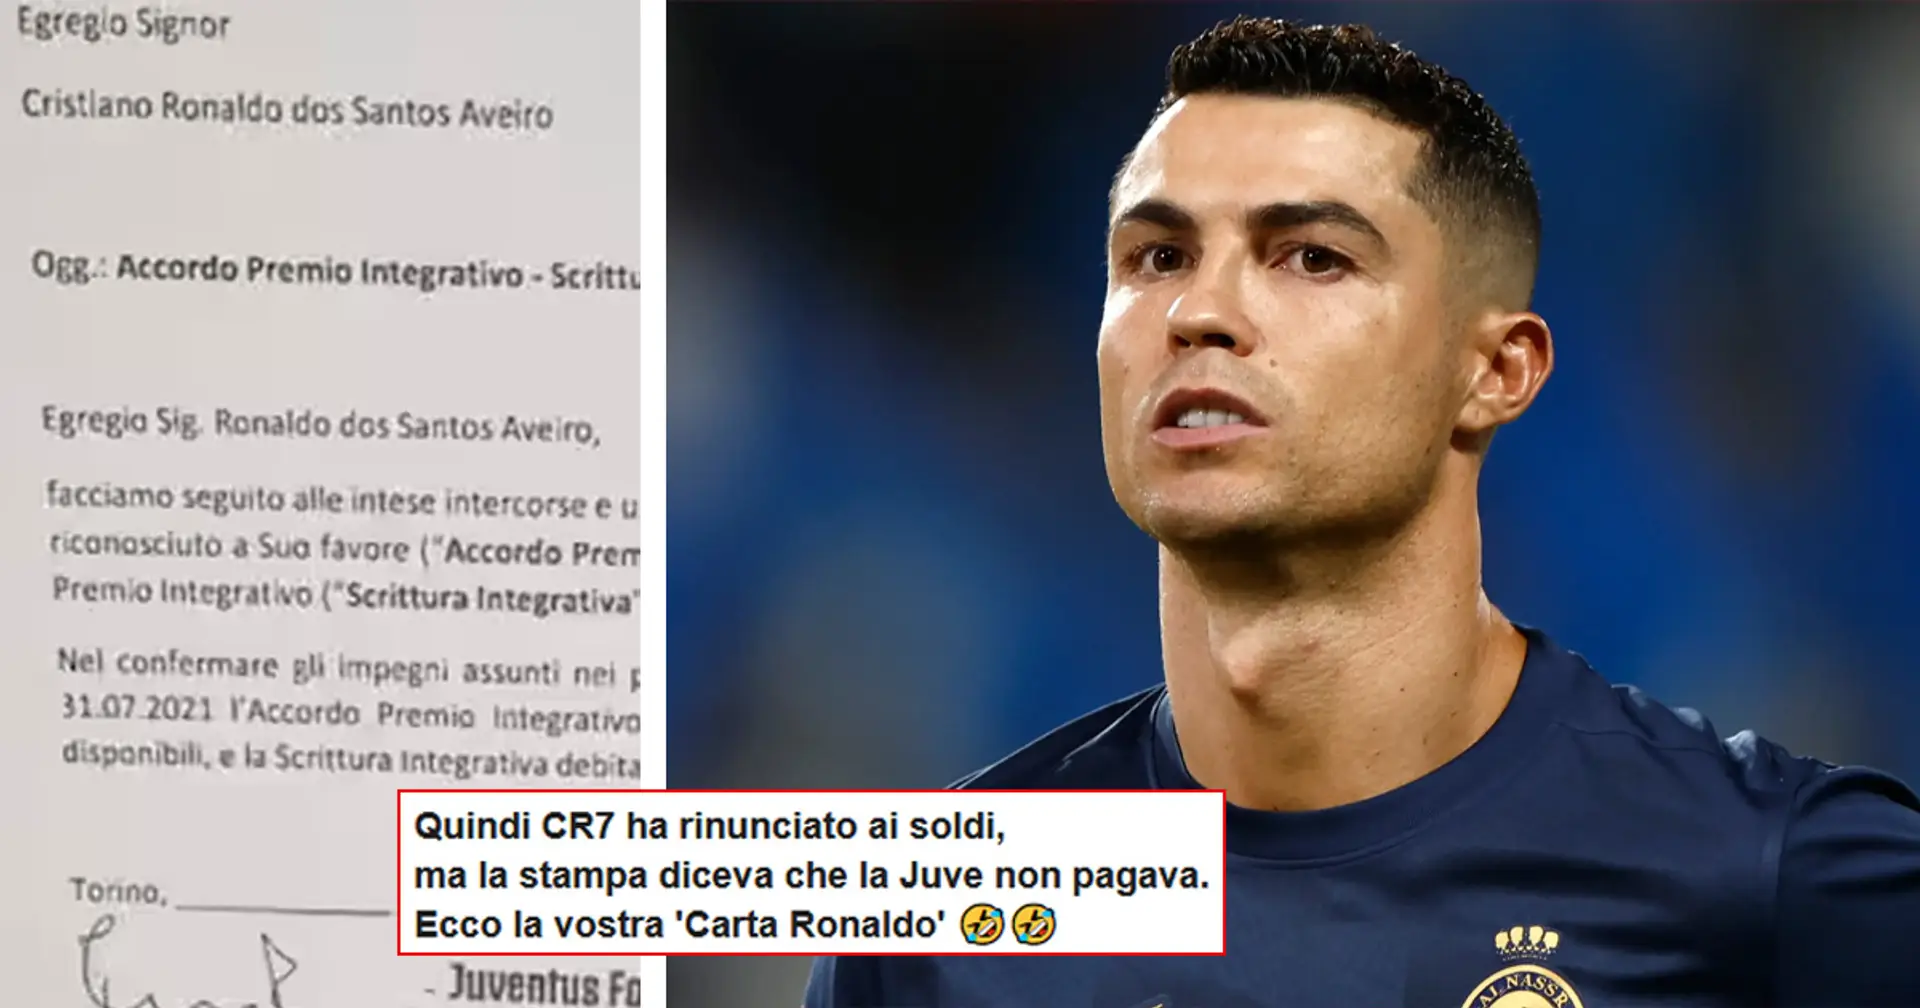 "Ecco la 'carta' Ronaldo!": i tifosi della Juve rispondono ai detrattori, ma CR7 non ci fa una bella figura